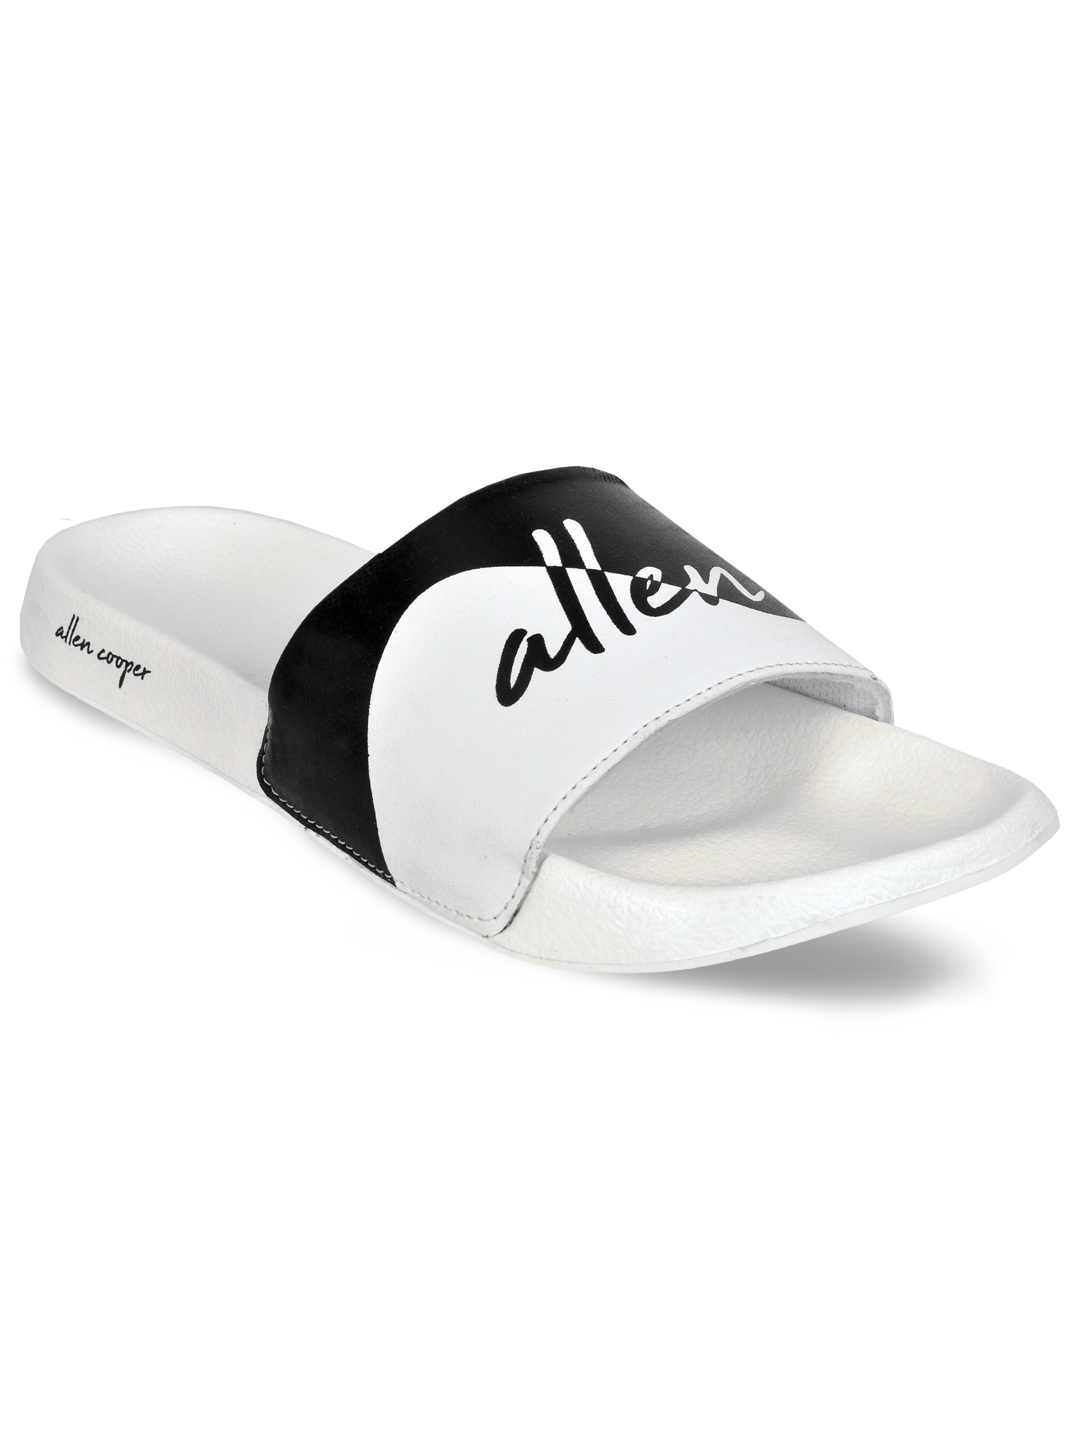 Allen Cooper | Allen Cooper White Sliders For Men